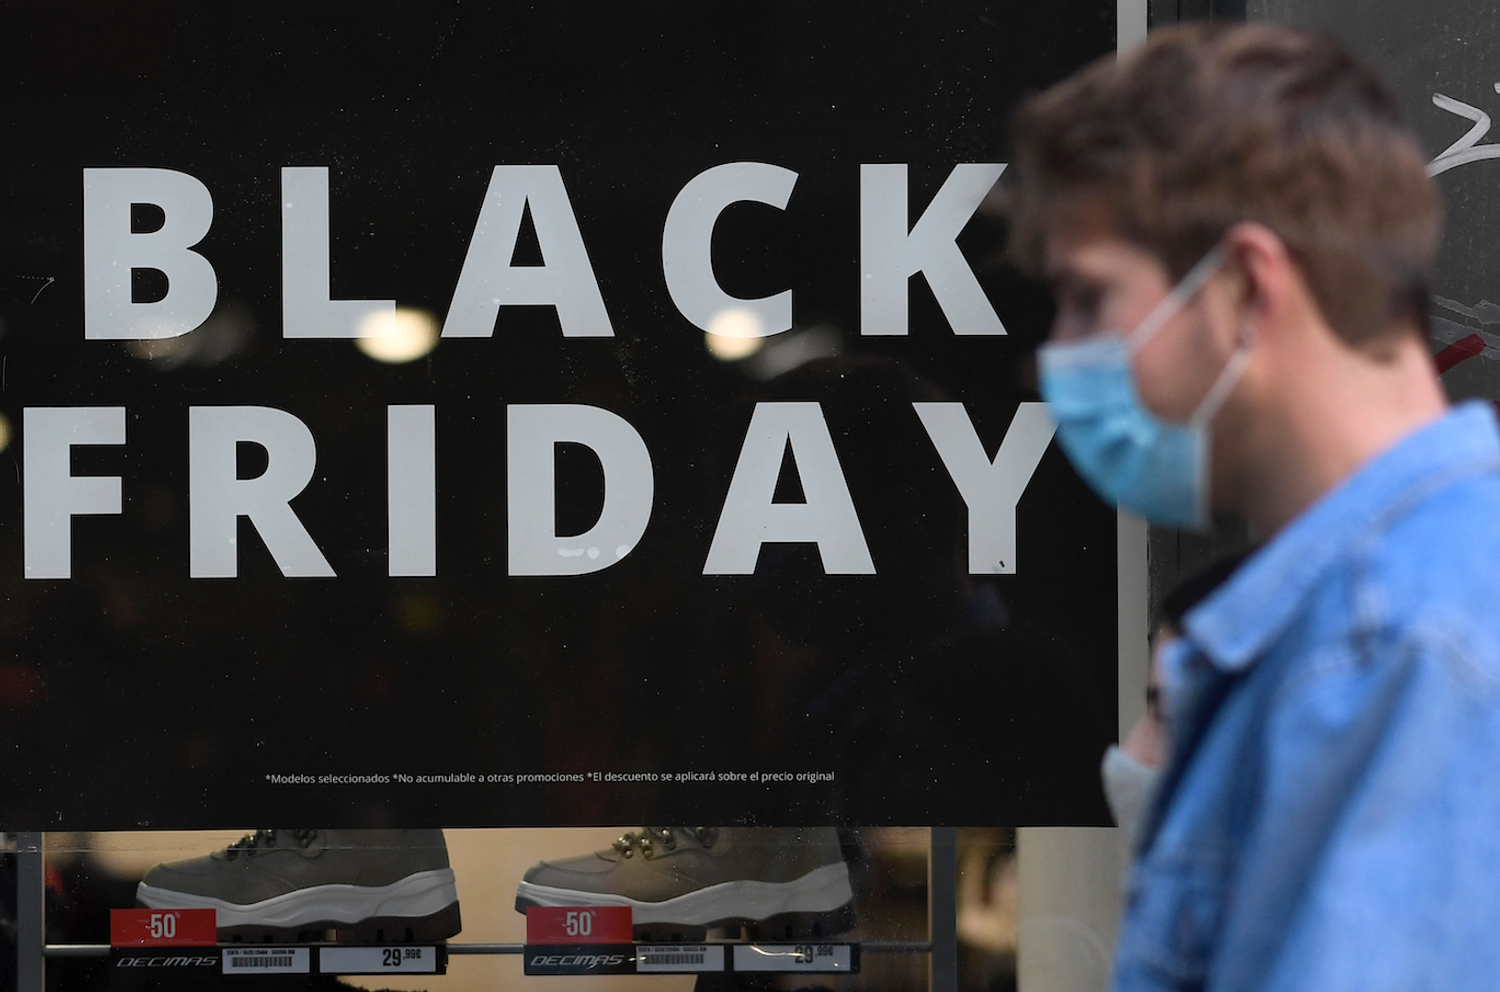 De nombreux commerces proposent des réductions à l'occasion du Black Friday.